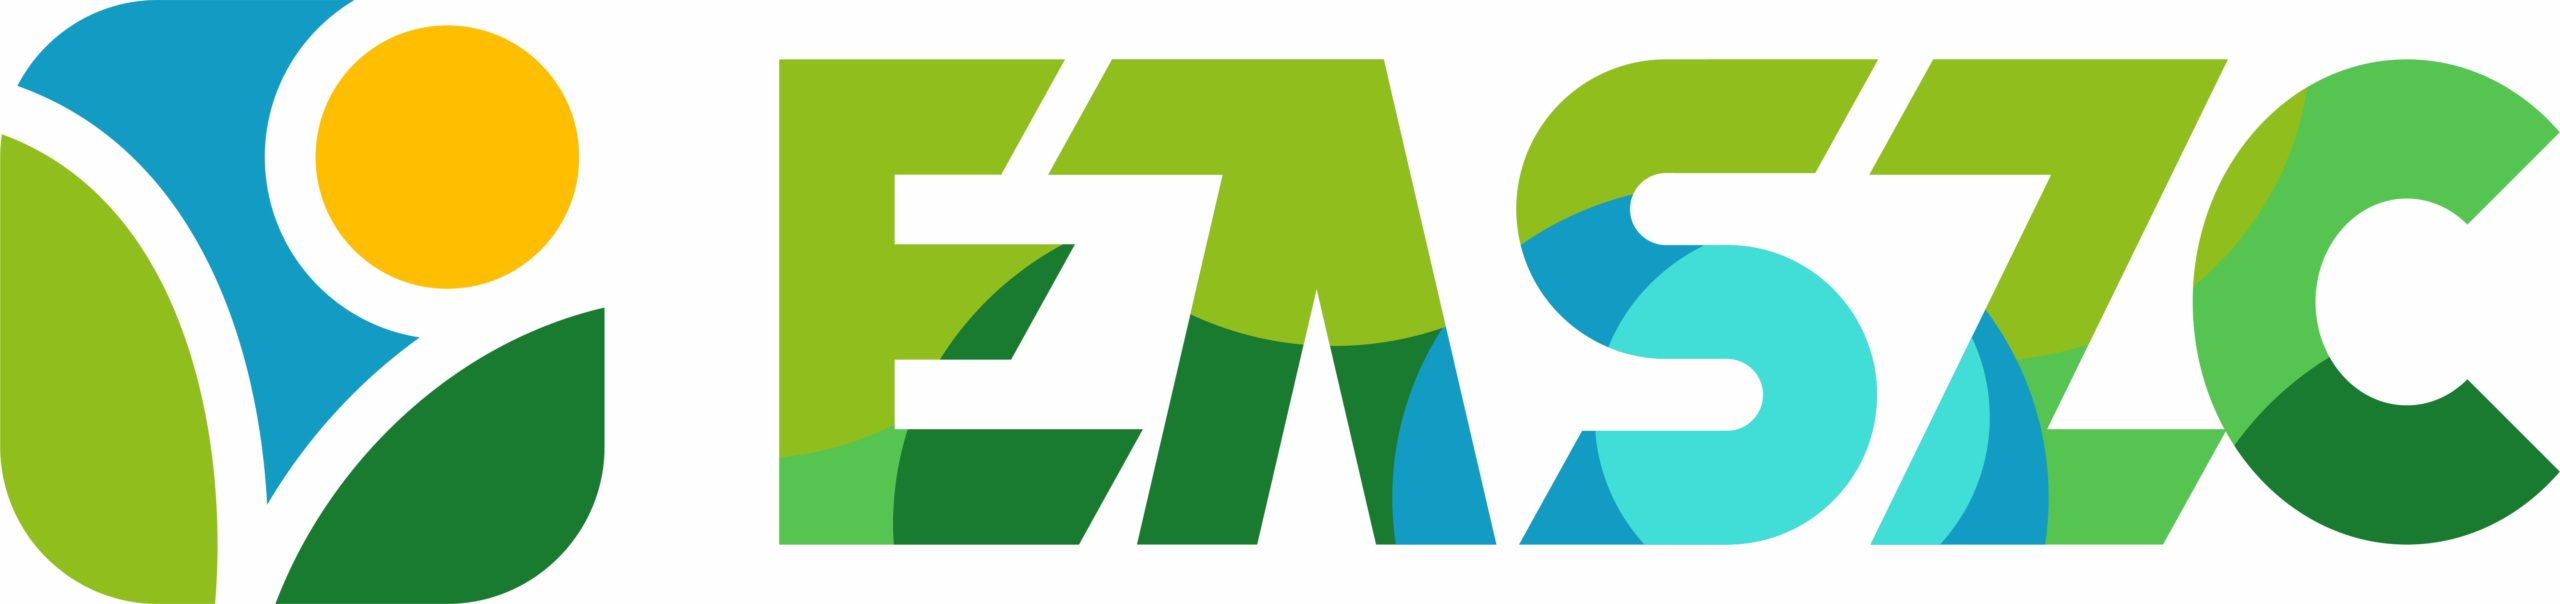 EASZC színes horizontális logó